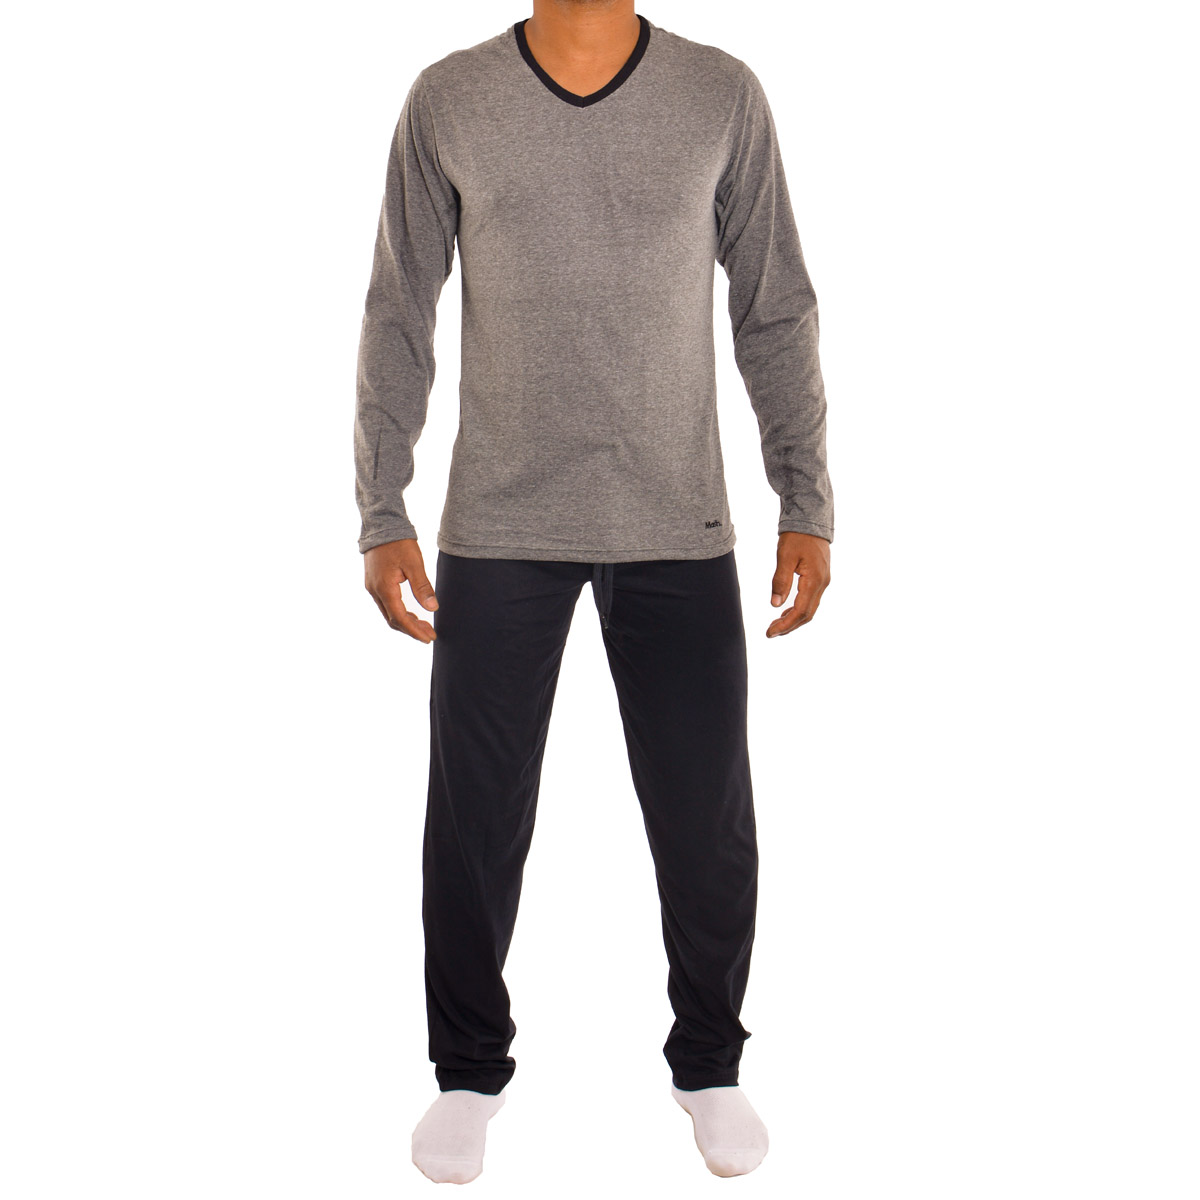 Pijama masculino para o inverno em algodão Mash - Bra Lingerie